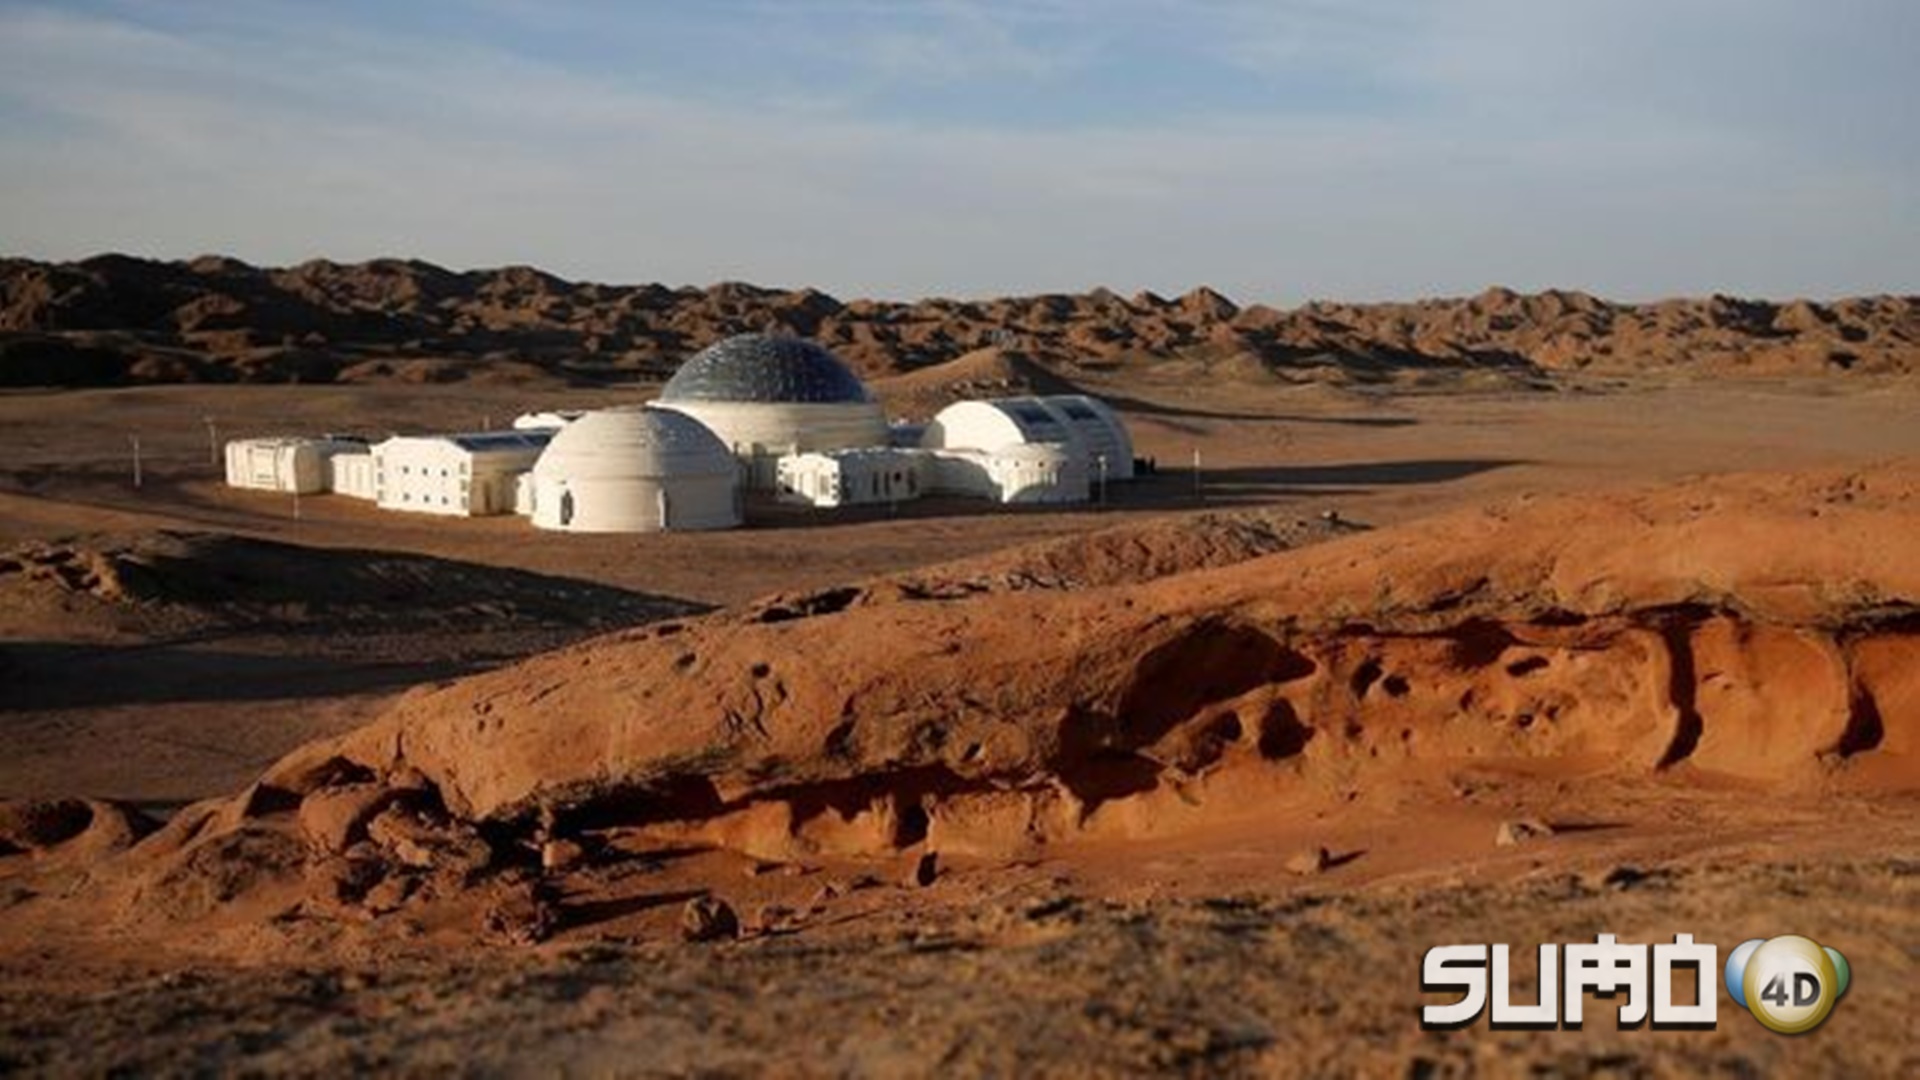 China PamChina Pamerkan Rumah Koloni Mars di Gurun Gobierkan Rumah Koloni Mars di Gurun Gobi